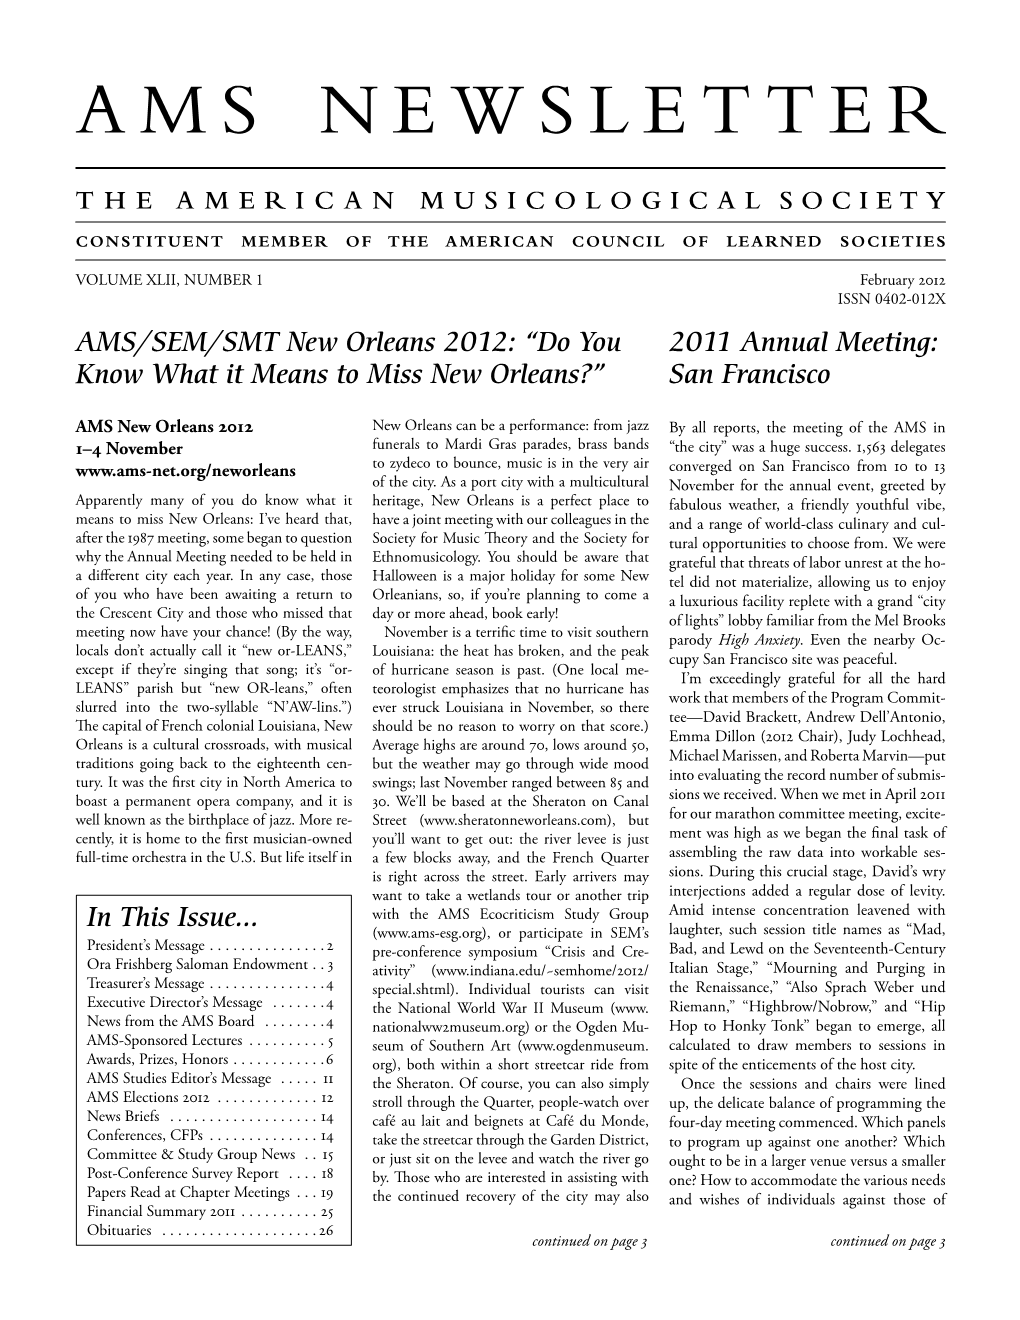 AMS Newsletter February 2012